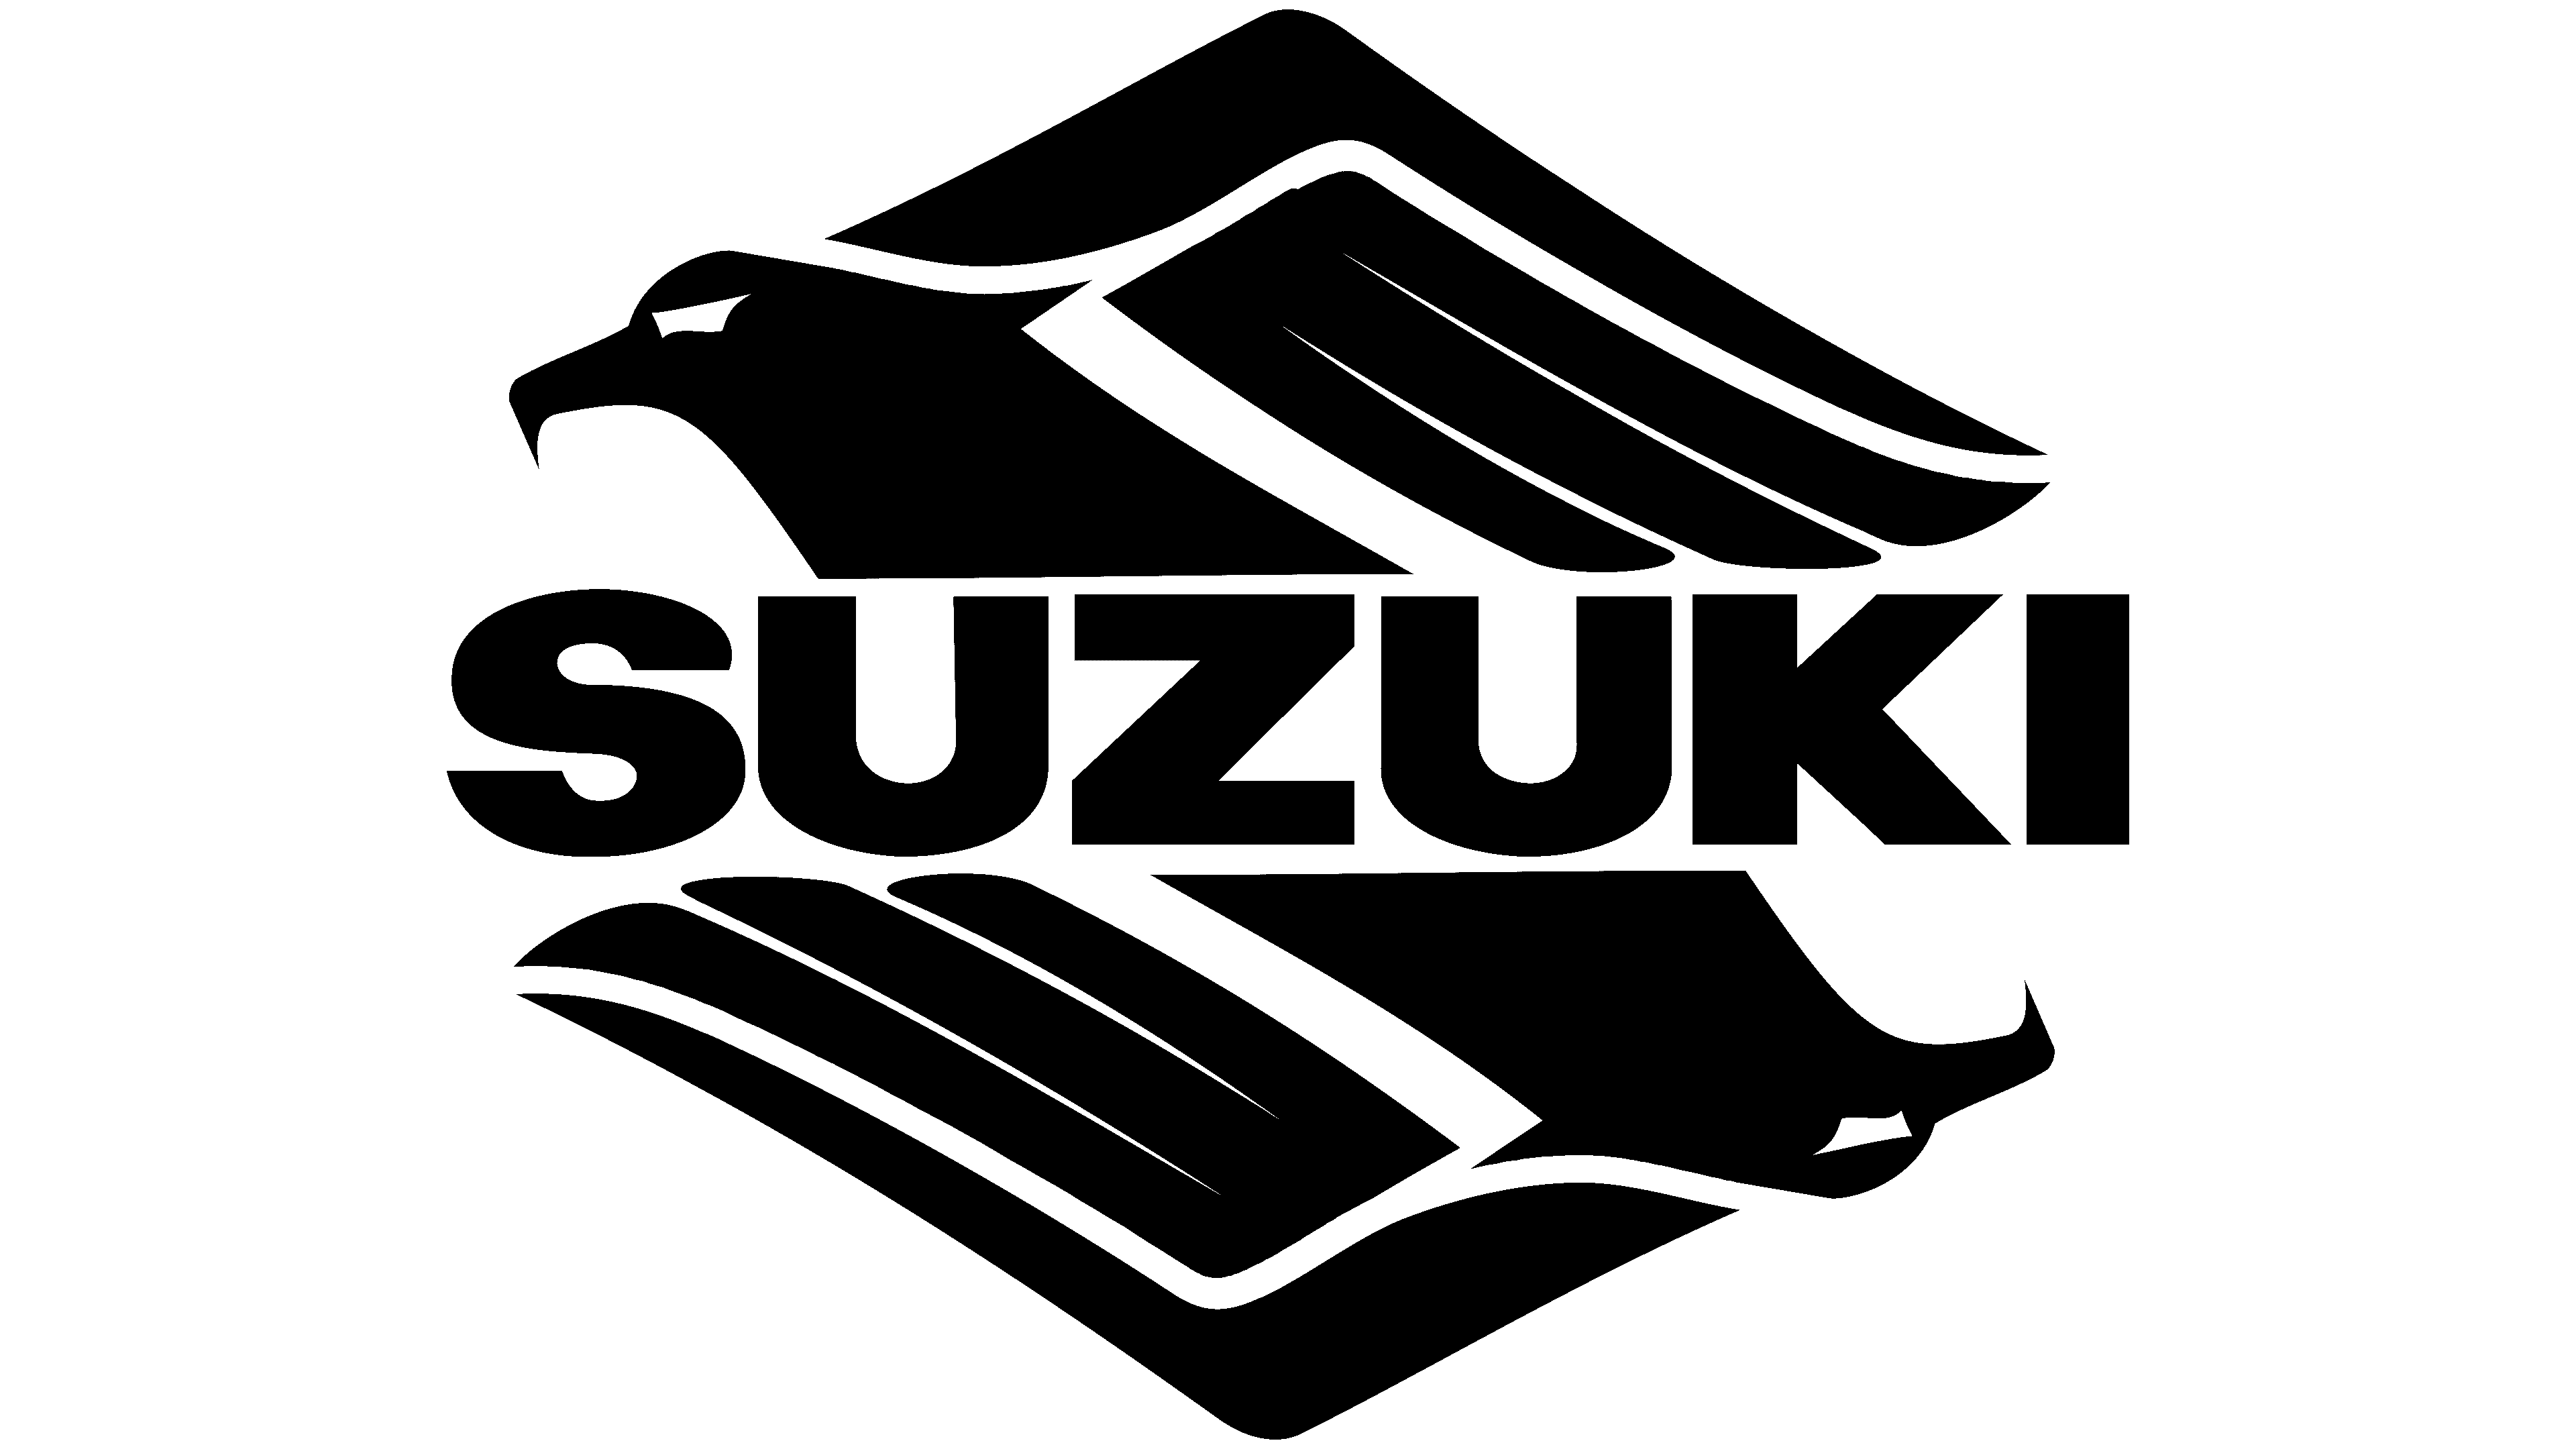 Suzuki Papua New Guinea. Vehicles and Marine